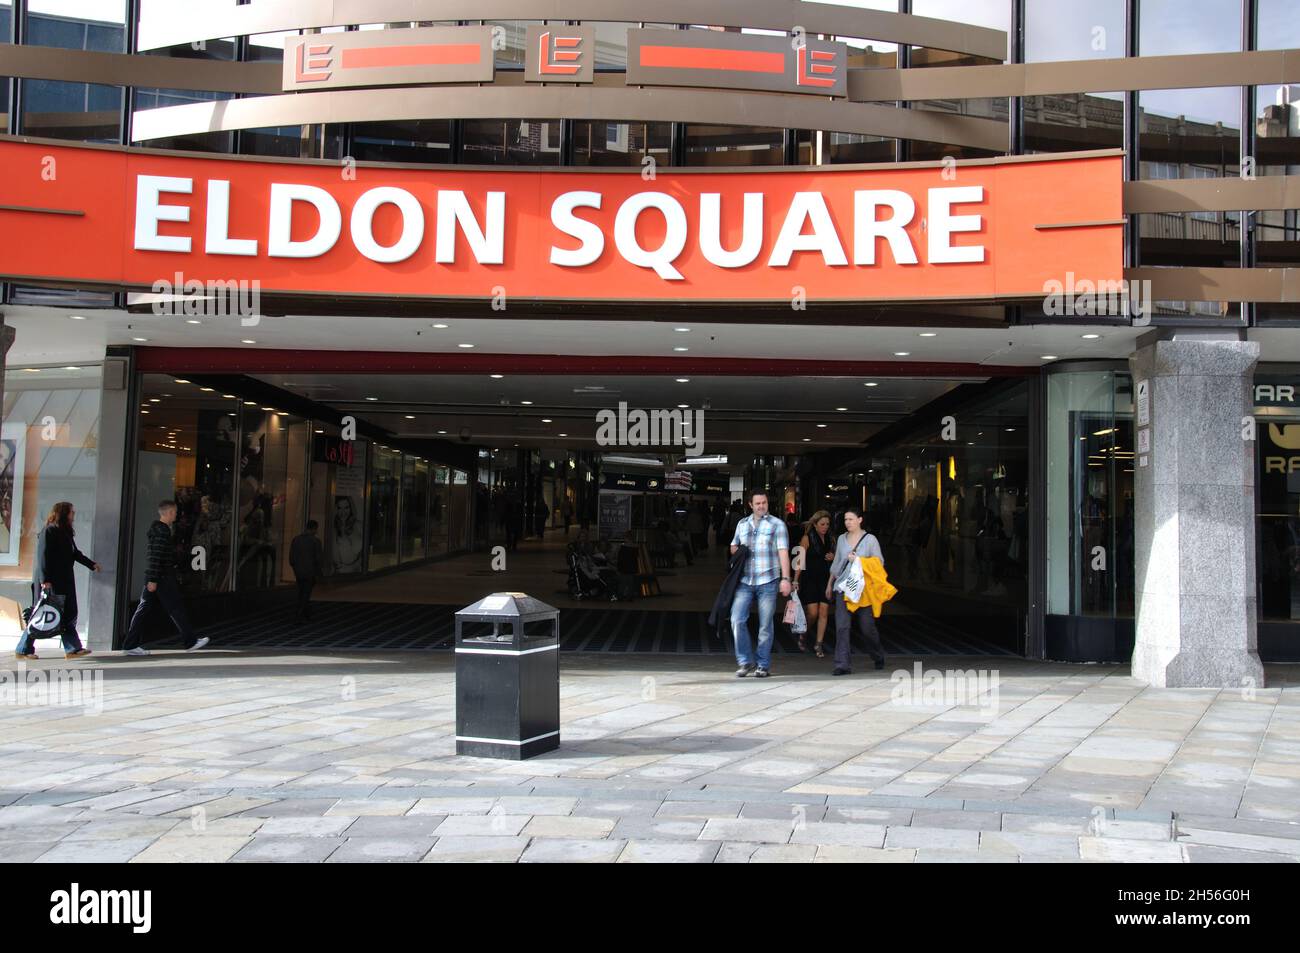 L'Eldon Sqare Shopping Arcade a été l'un des premiers du pays et est très populaire auprès des visiteurs de Scandinavie ainsi que de nombreuses autres parties de Banque D'Images